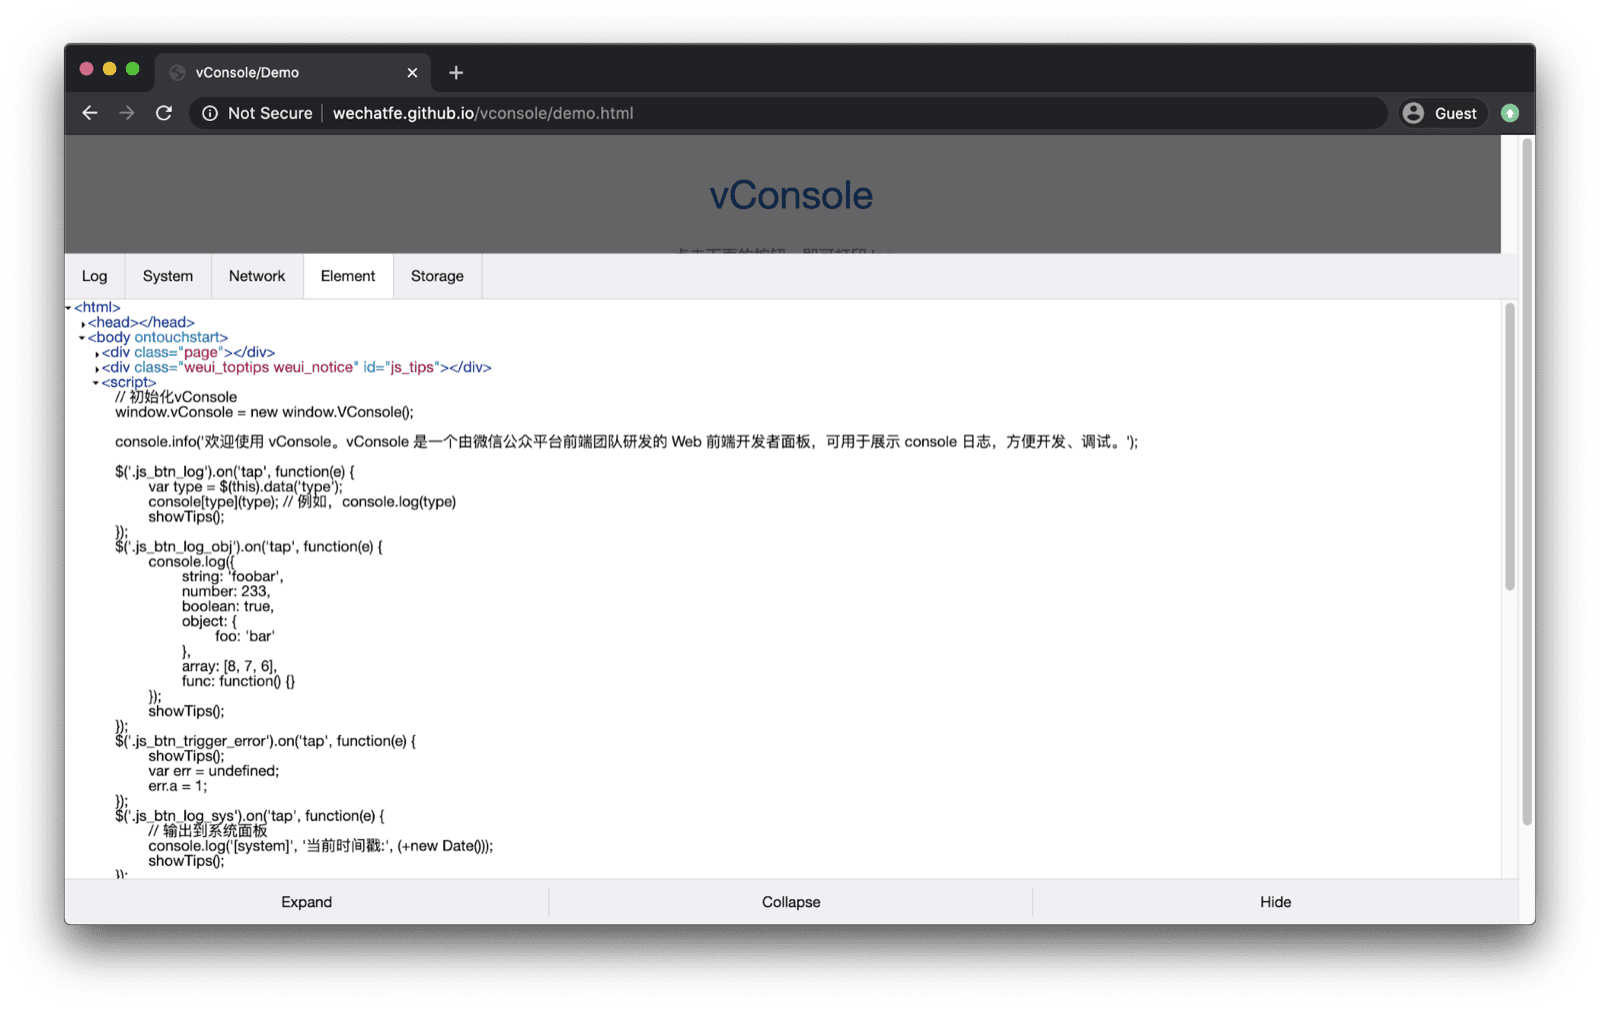 แอปเดโม vConsole ส่วน vConsole จะเปิดขึ้นด้านล่างและมีแท็บสำหรับบันทึก ระบบ เครือข่าย องค์ประกอบ และพื้นที่เก็บข้อมูล